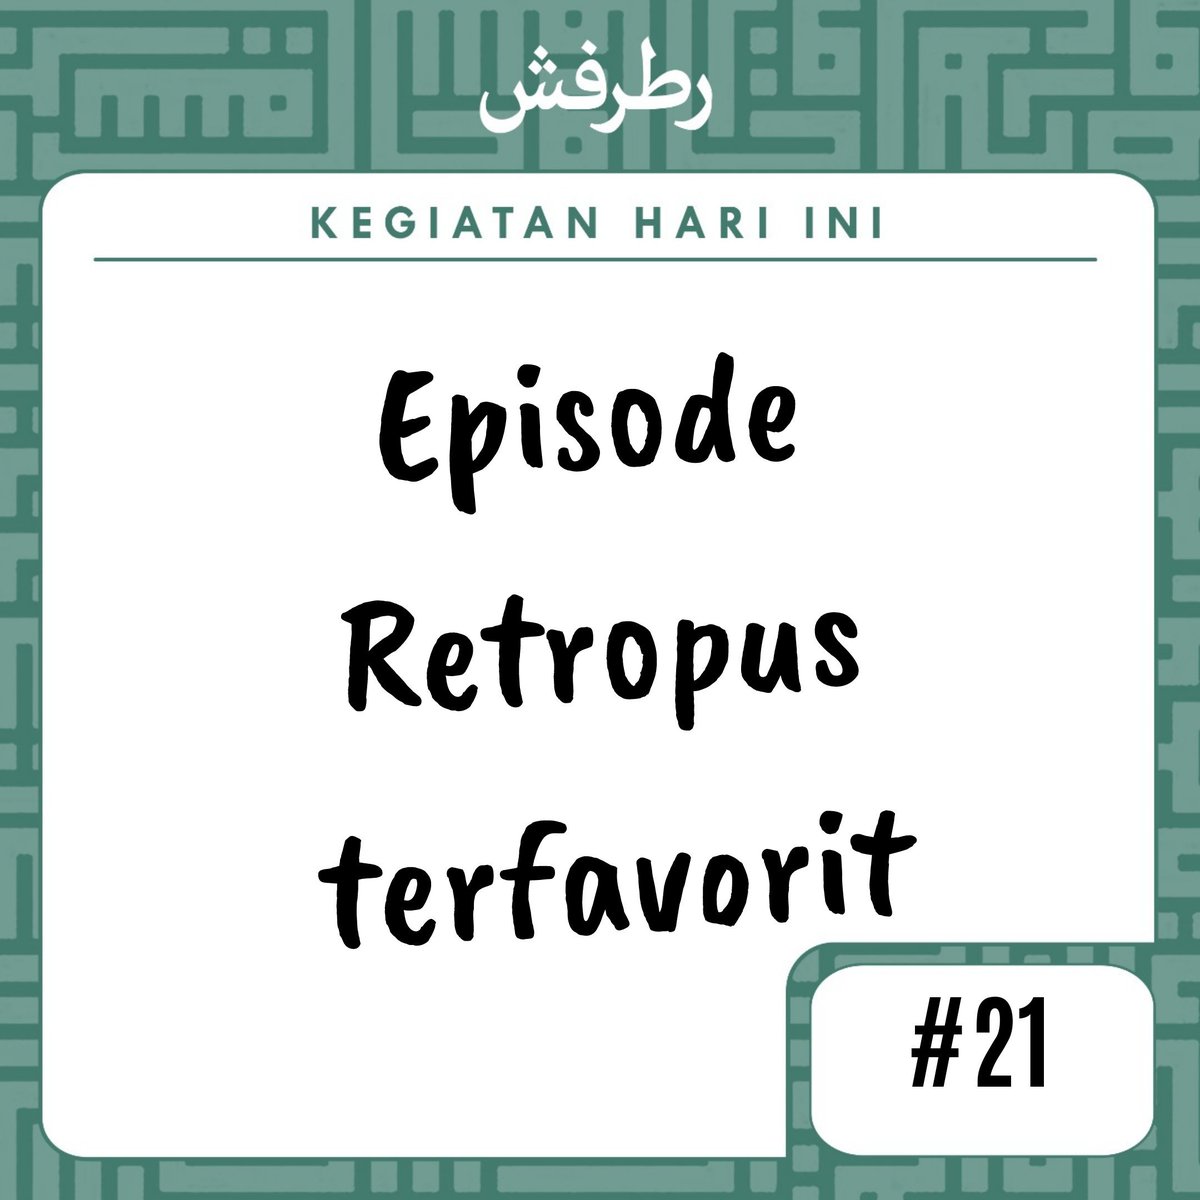  #RamadhanBarengRetropus hari ke-21Episode ini jadi favorit gara2 banyak ilmu yang bisa diambil wkwk @podcastretropus